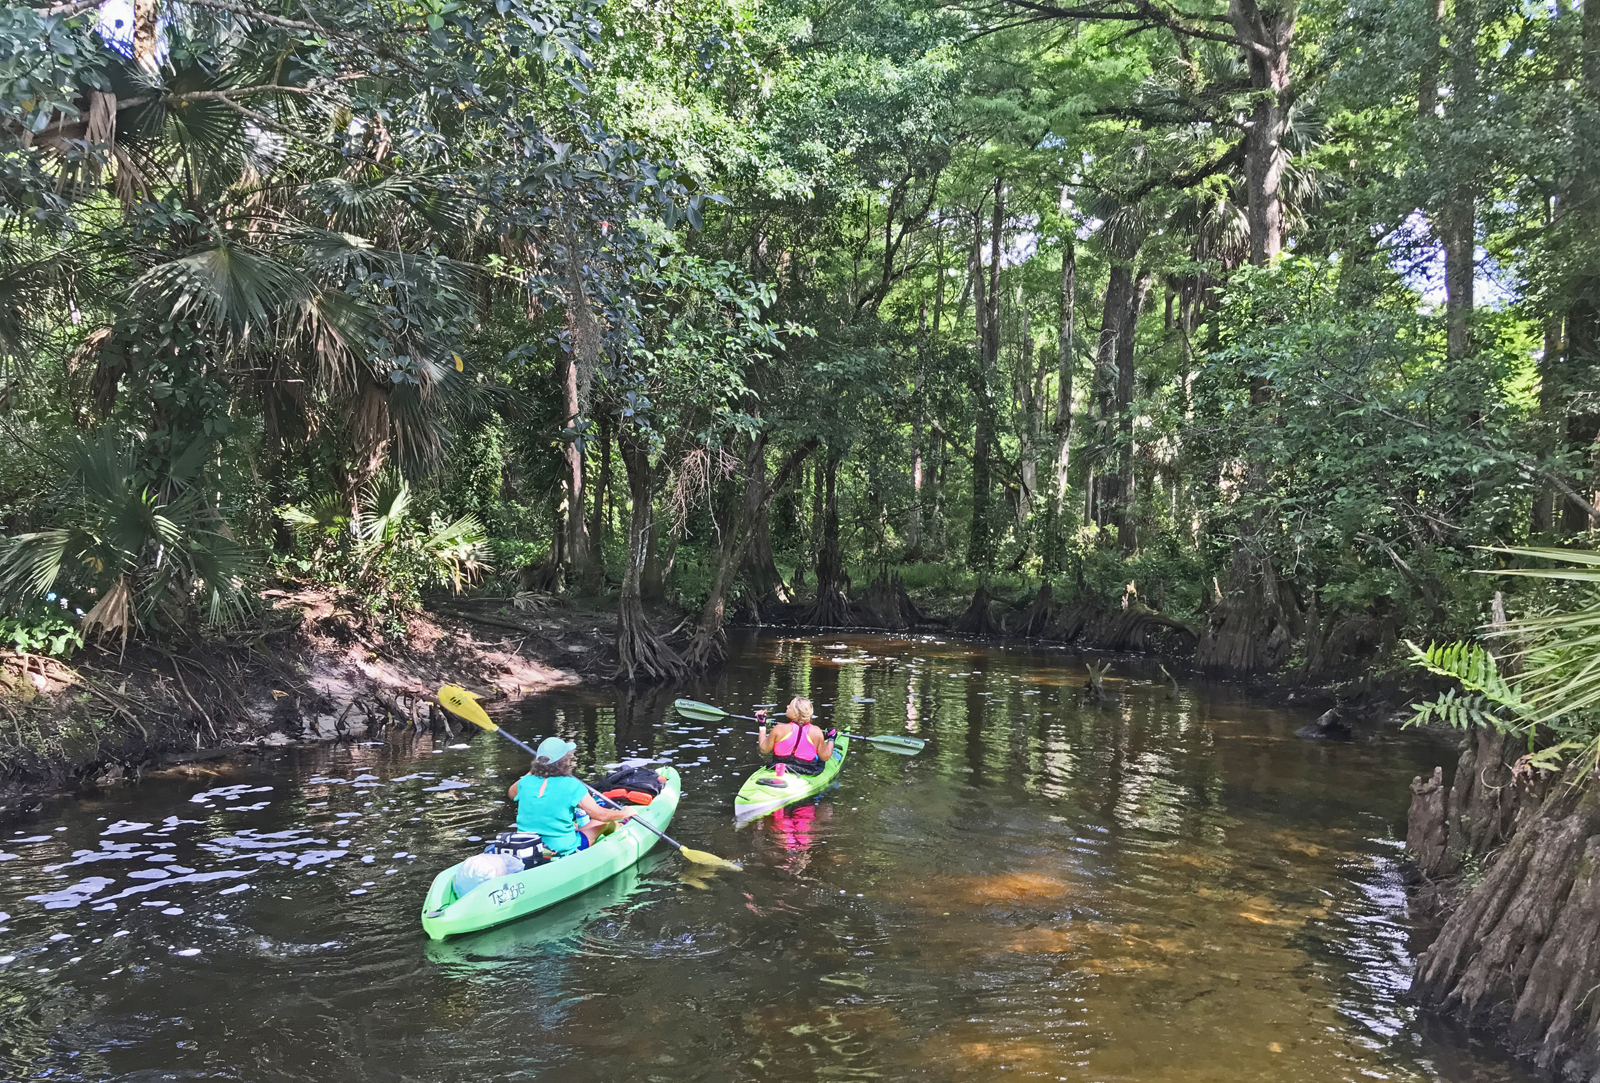 Río Loxahatchee: kayak en un río salvaje y pintoresco en el sur de Florida